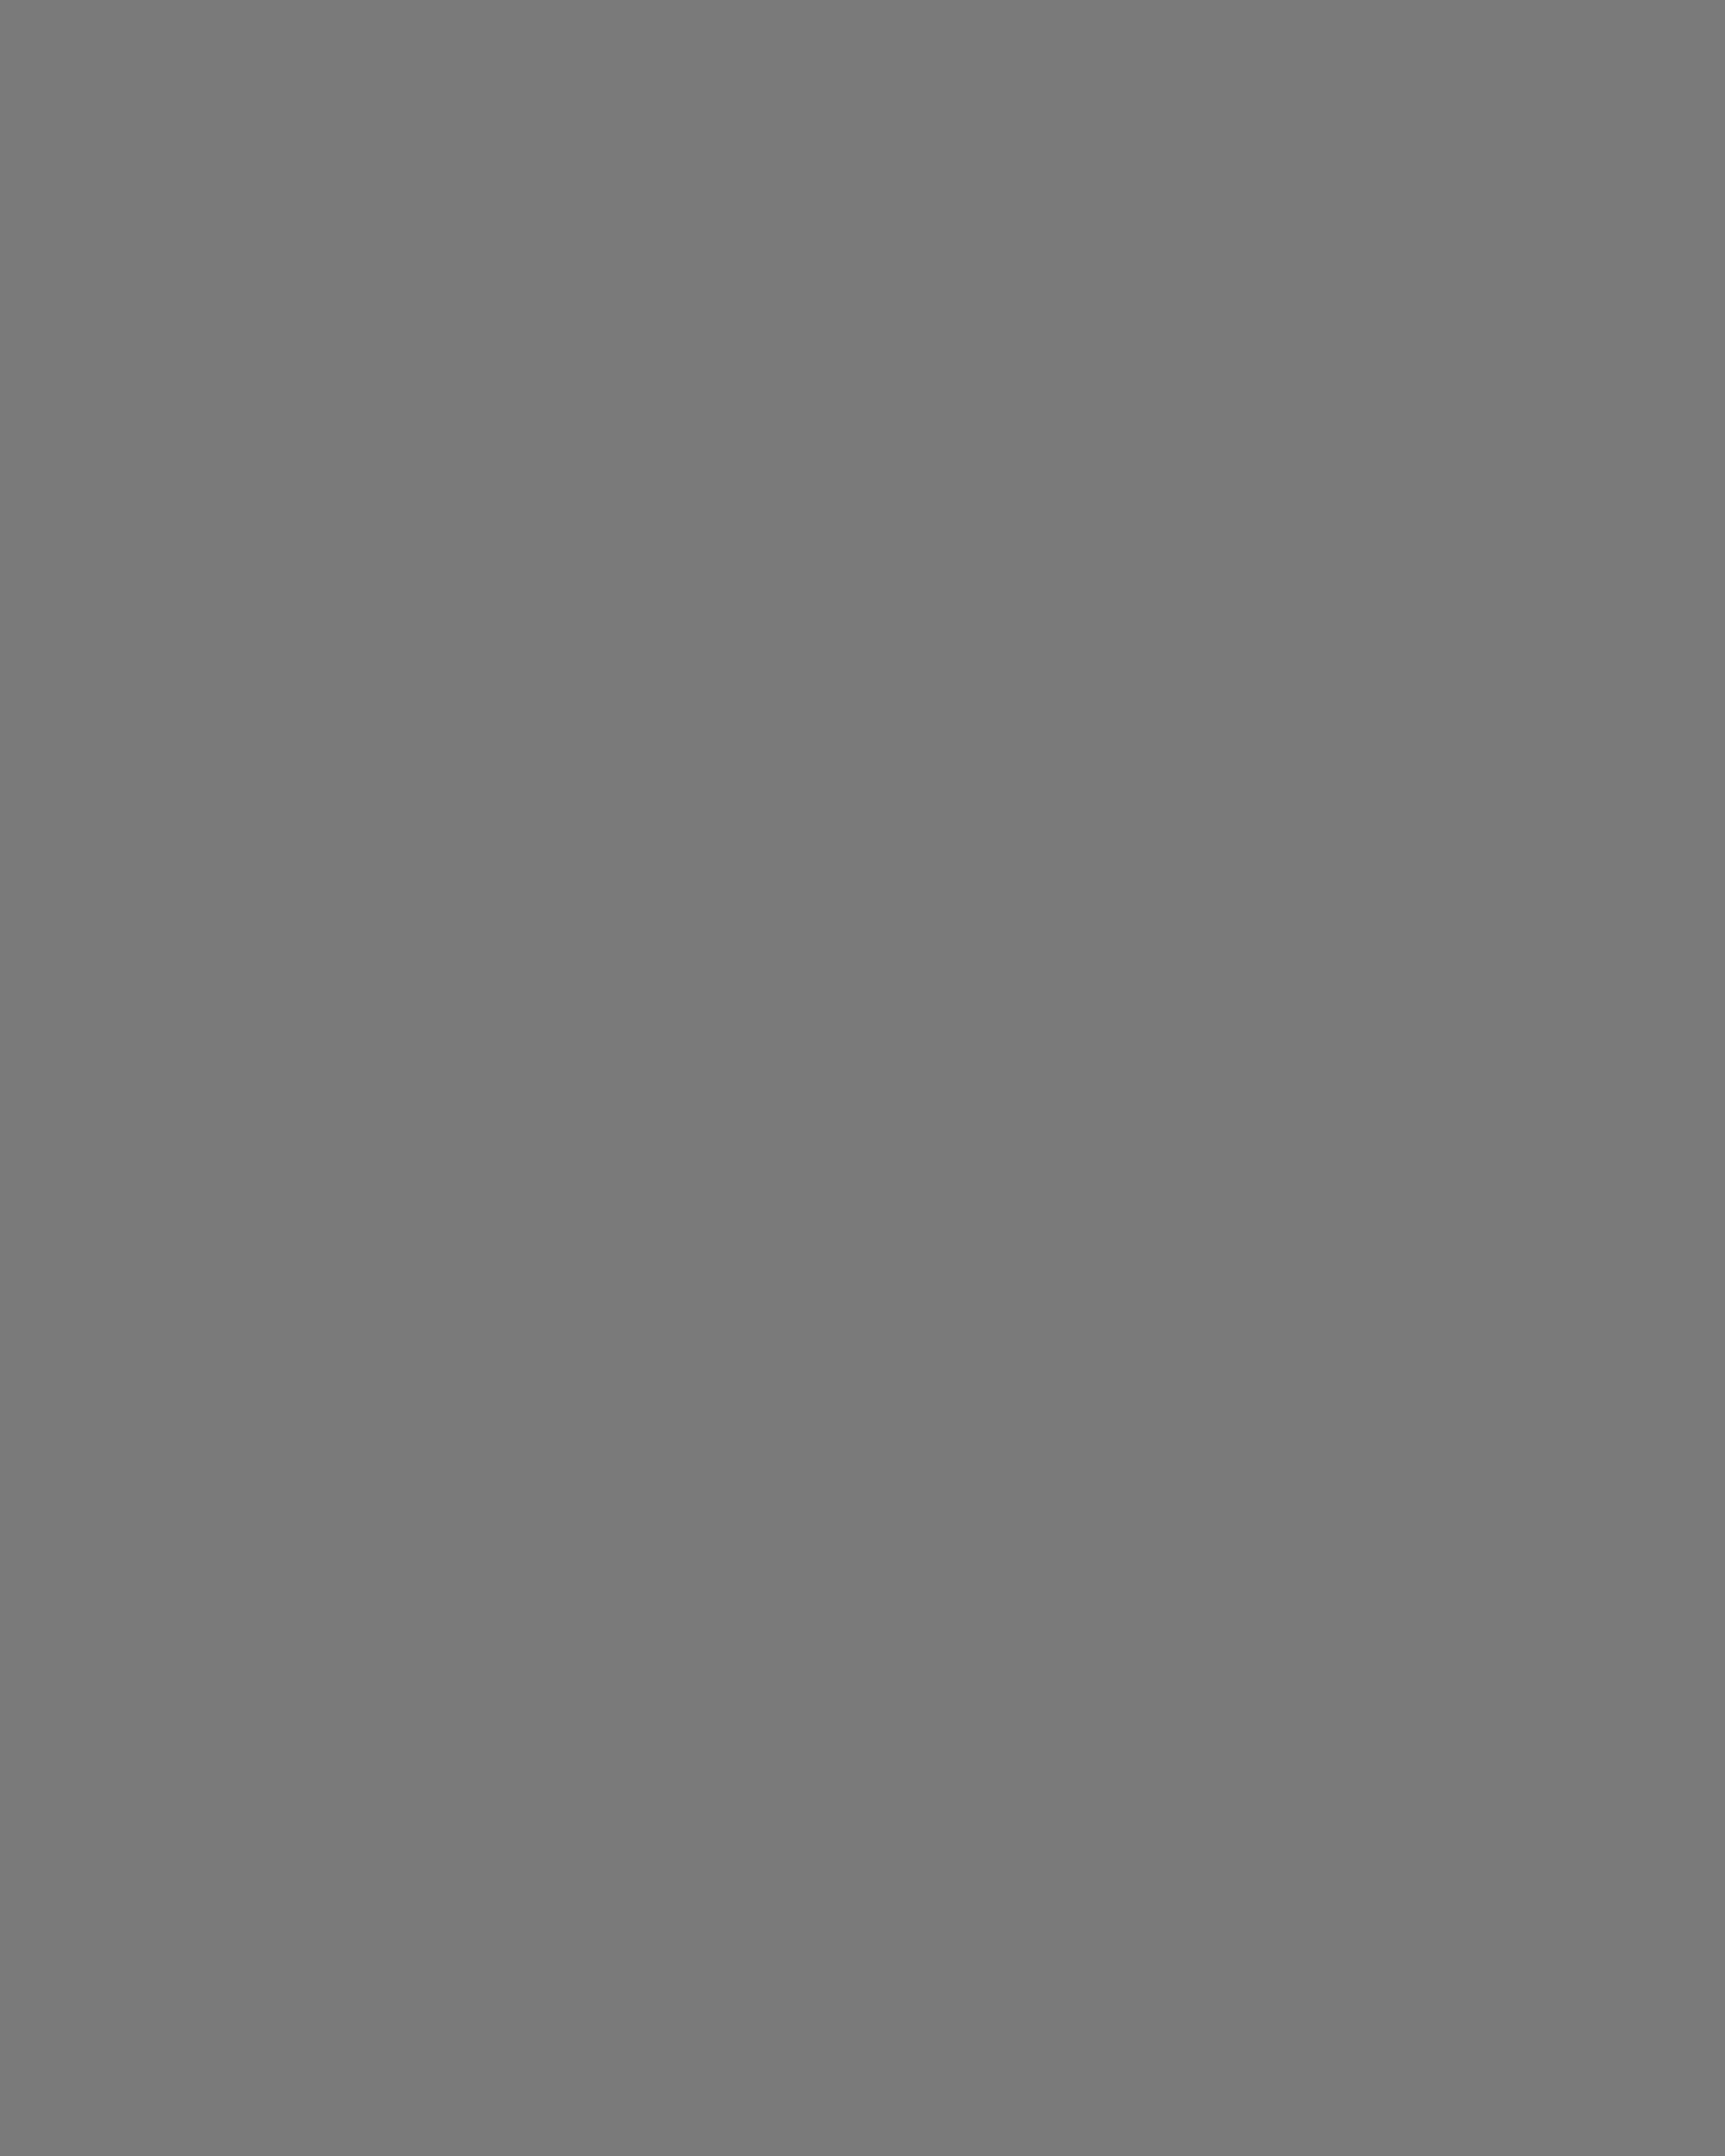 Владимир Этуш в гримерной театра им. Вахтангова. Москва, 2008 год. Фотография: Виталий Белоусов / ИТАР-ТАСС